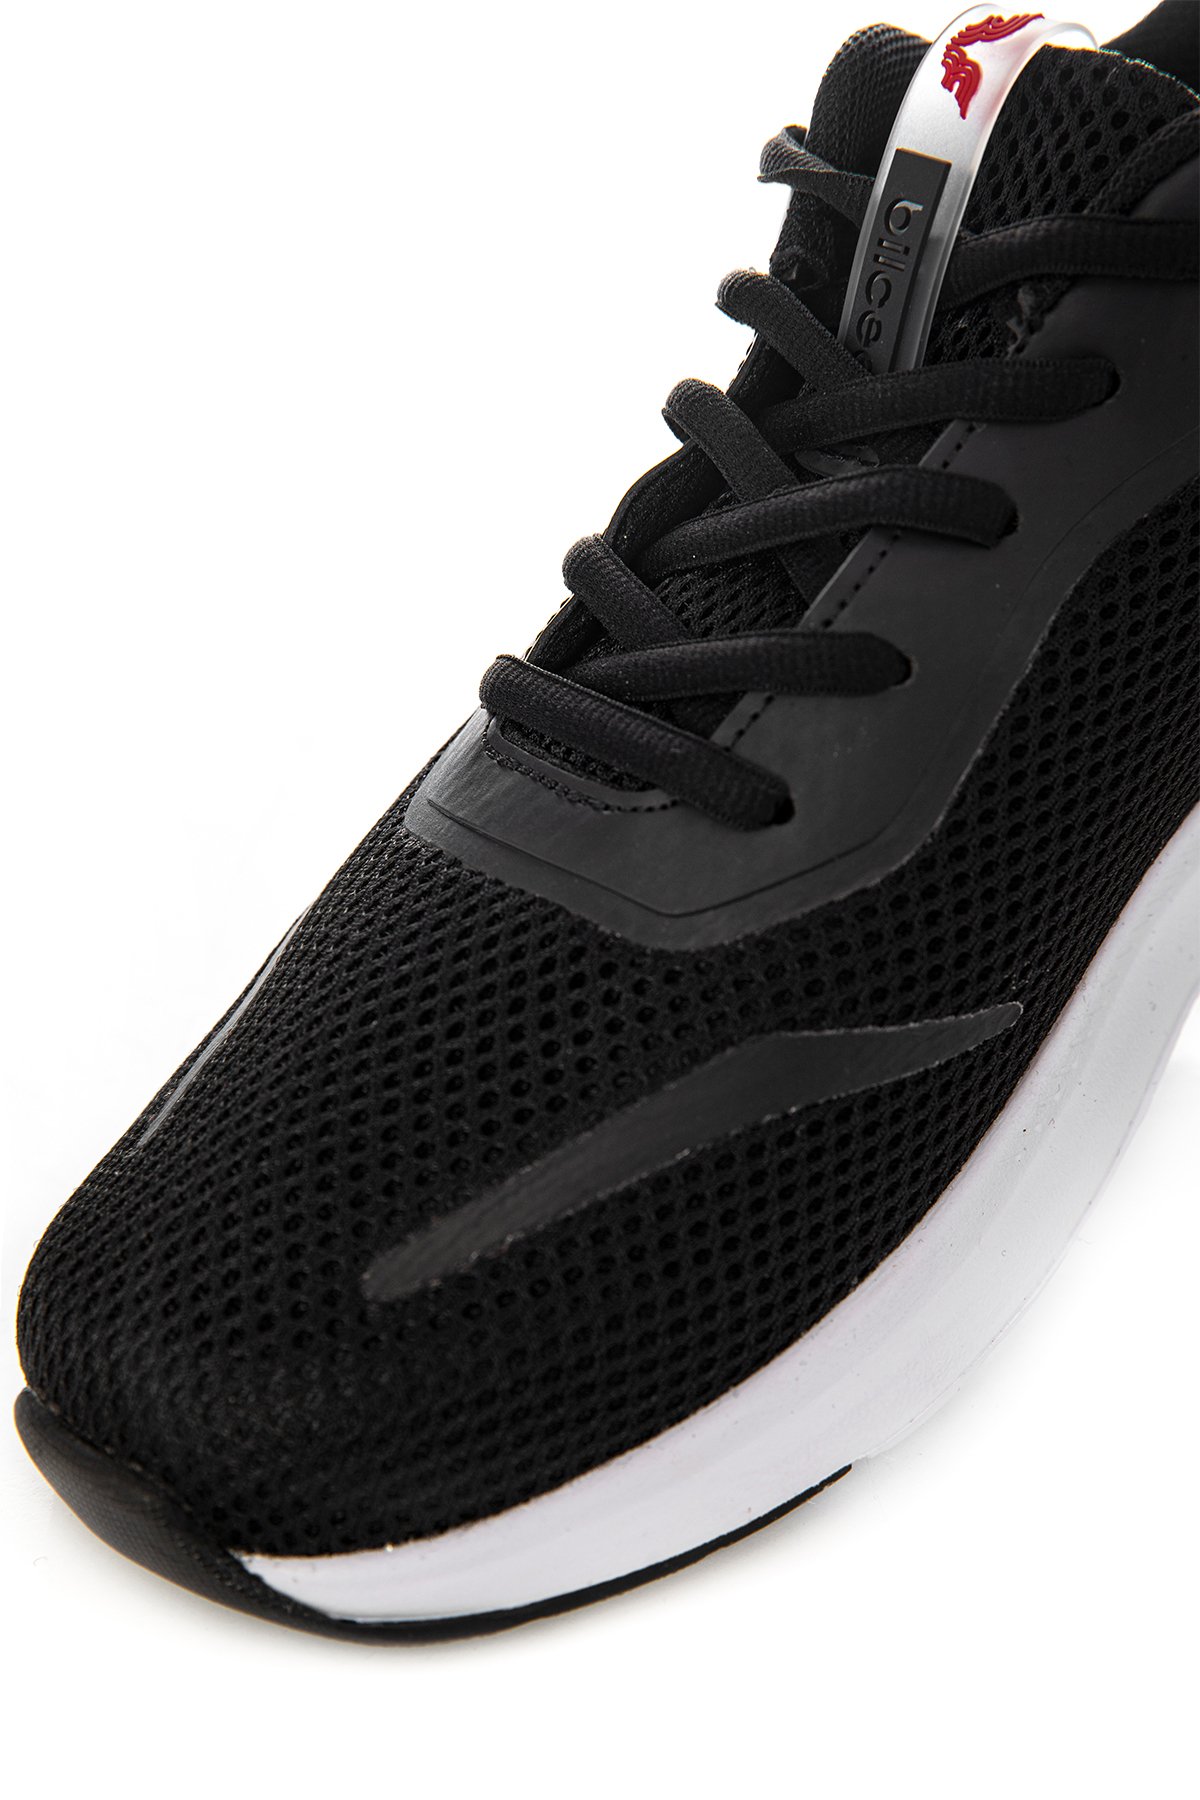 Unisex Siyah-Beyaz Runner-One Unisex Spor Ayakkabı 1000